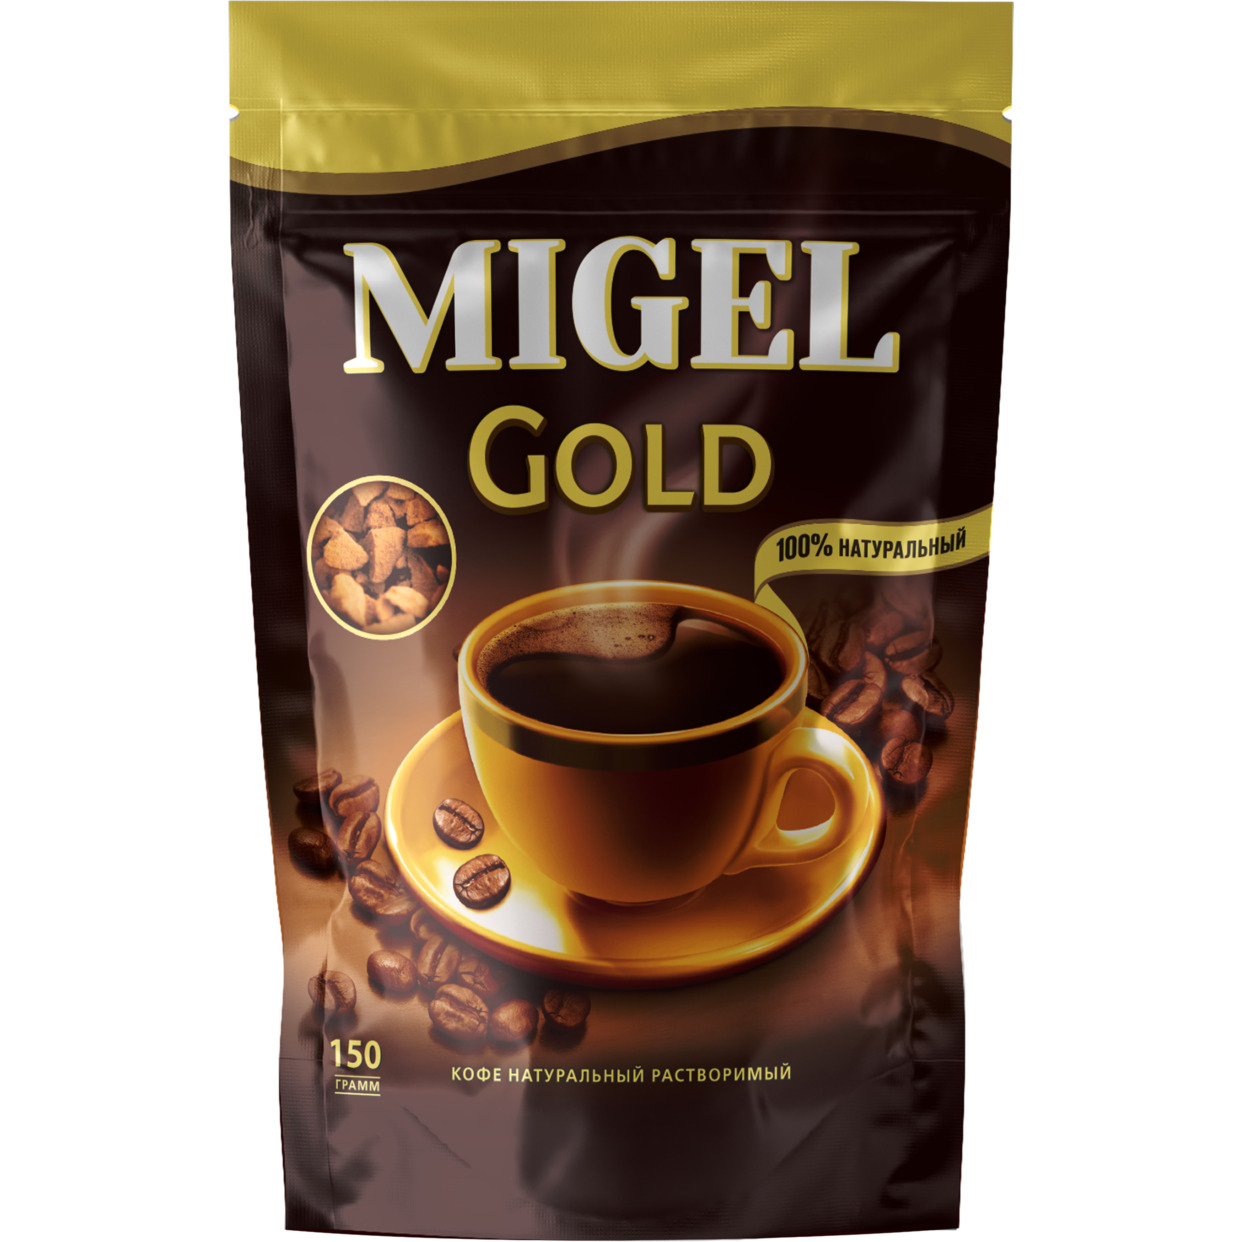 Кофе натуральный растворимый сублимированный MIGEL GOLD 150 г, дой-пак по акции в Пятерочке